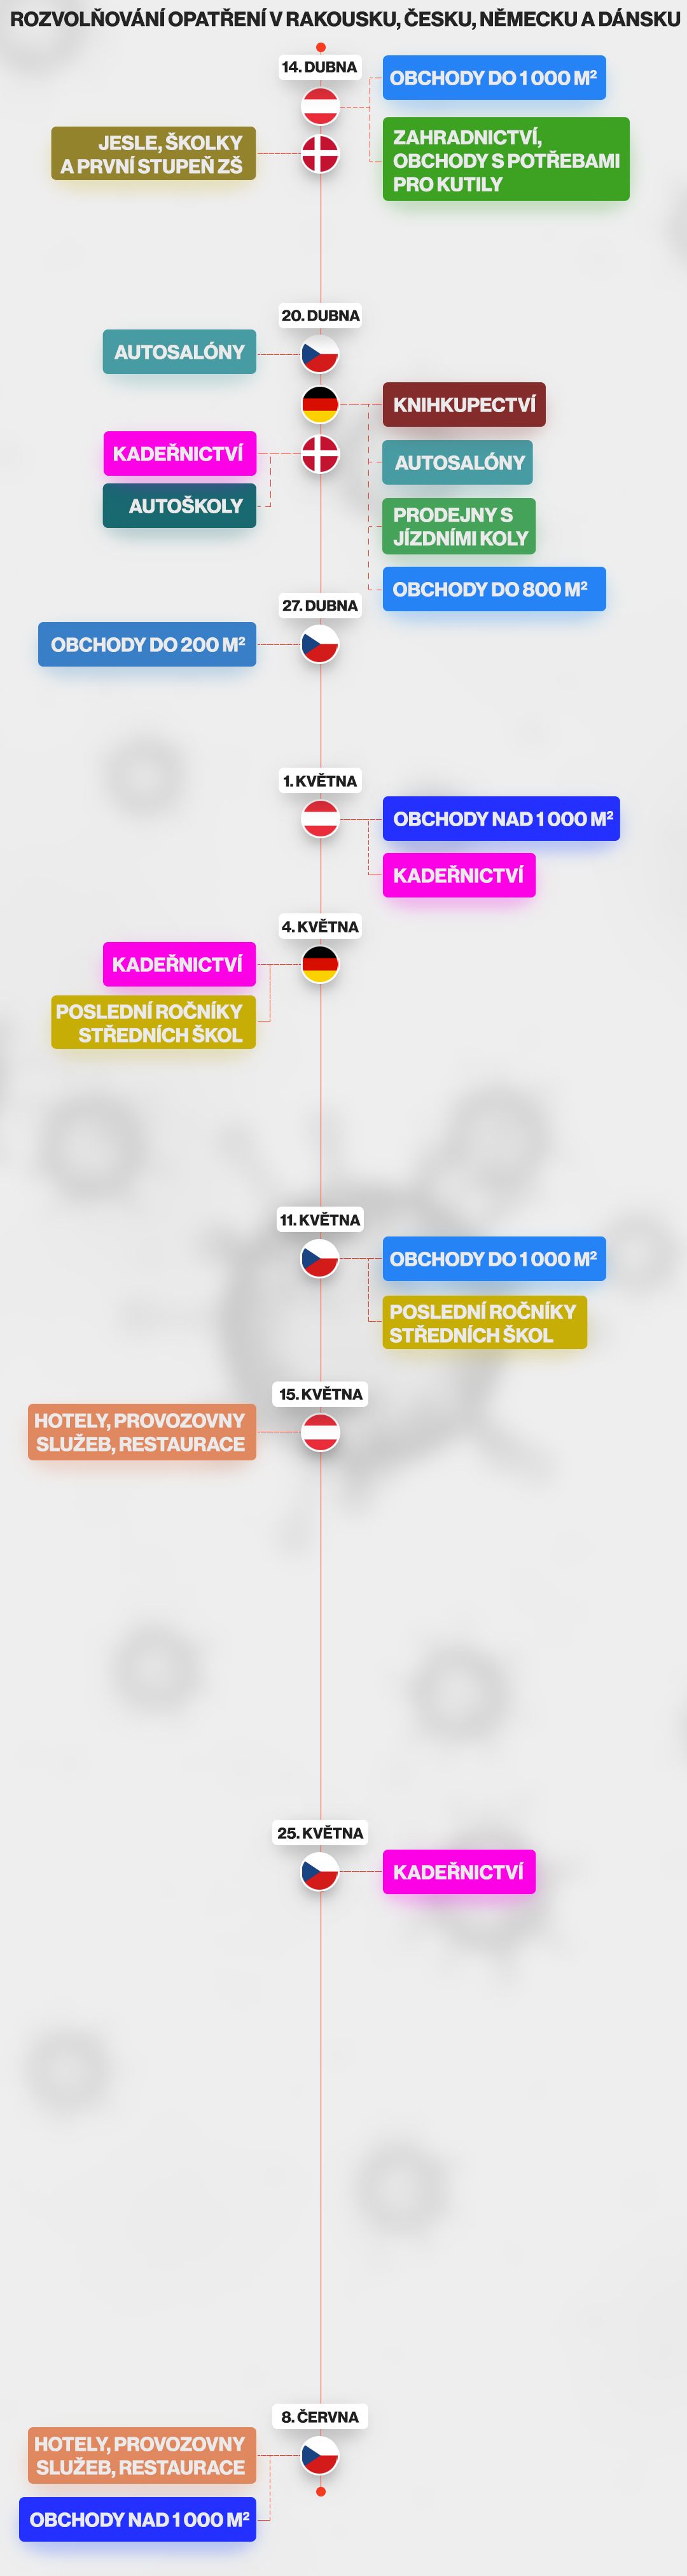 Rozvolňování opatření v Rakousku, Česku, Německu a Dánsku